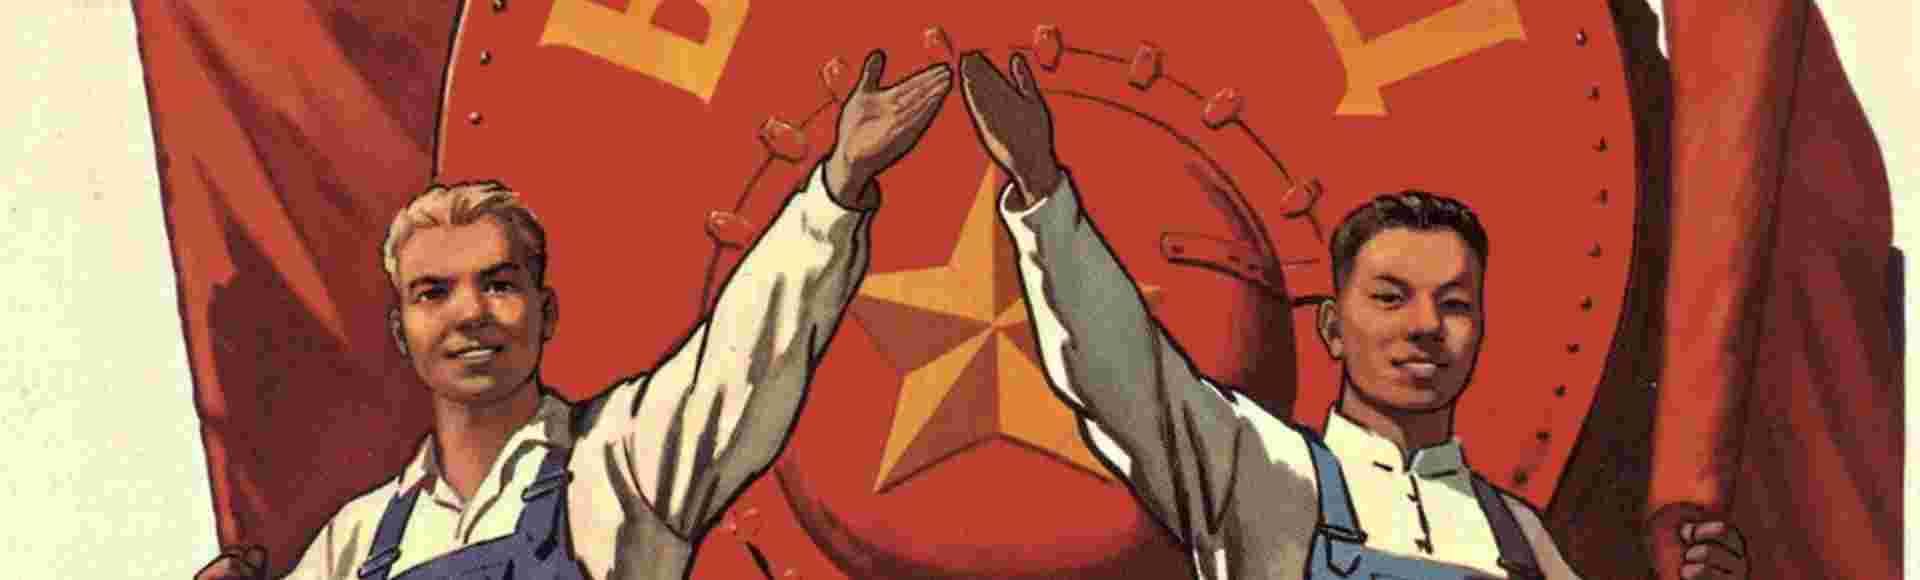 Sino-Soviet propaganda poster.